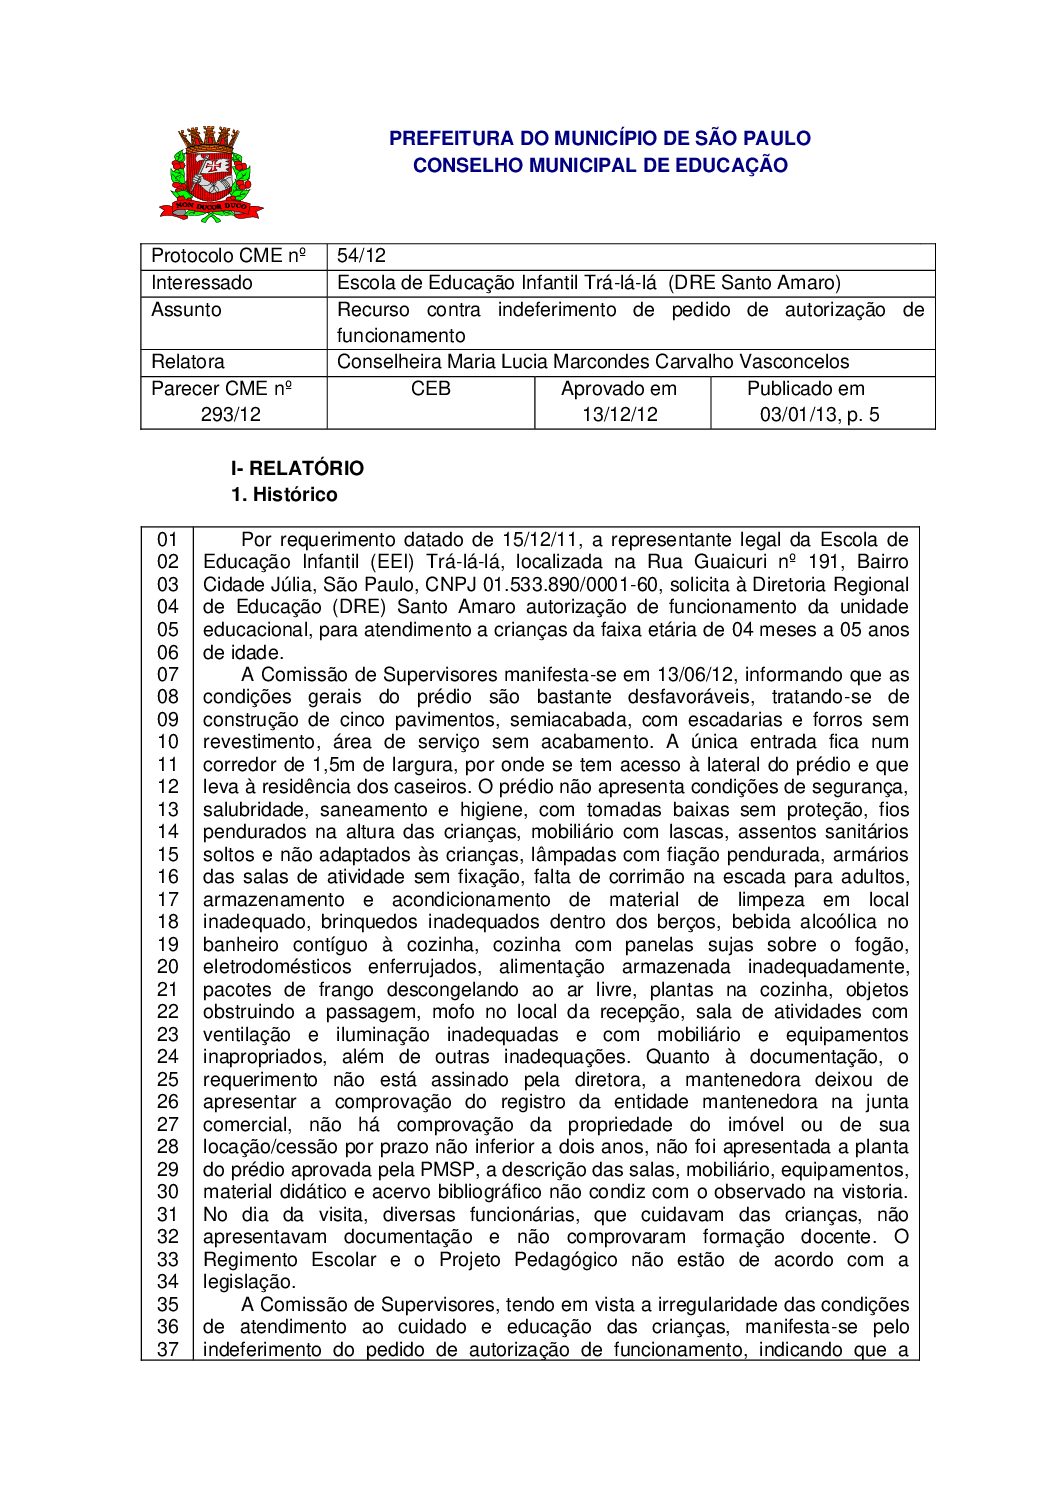 Parecer CME nº 293/2012 - Escola de Educação Infantil Trá-lá-lá  (DRE Santo Amaro) - Recurso contra indeferimento de pedido de autorização de funcionamento 